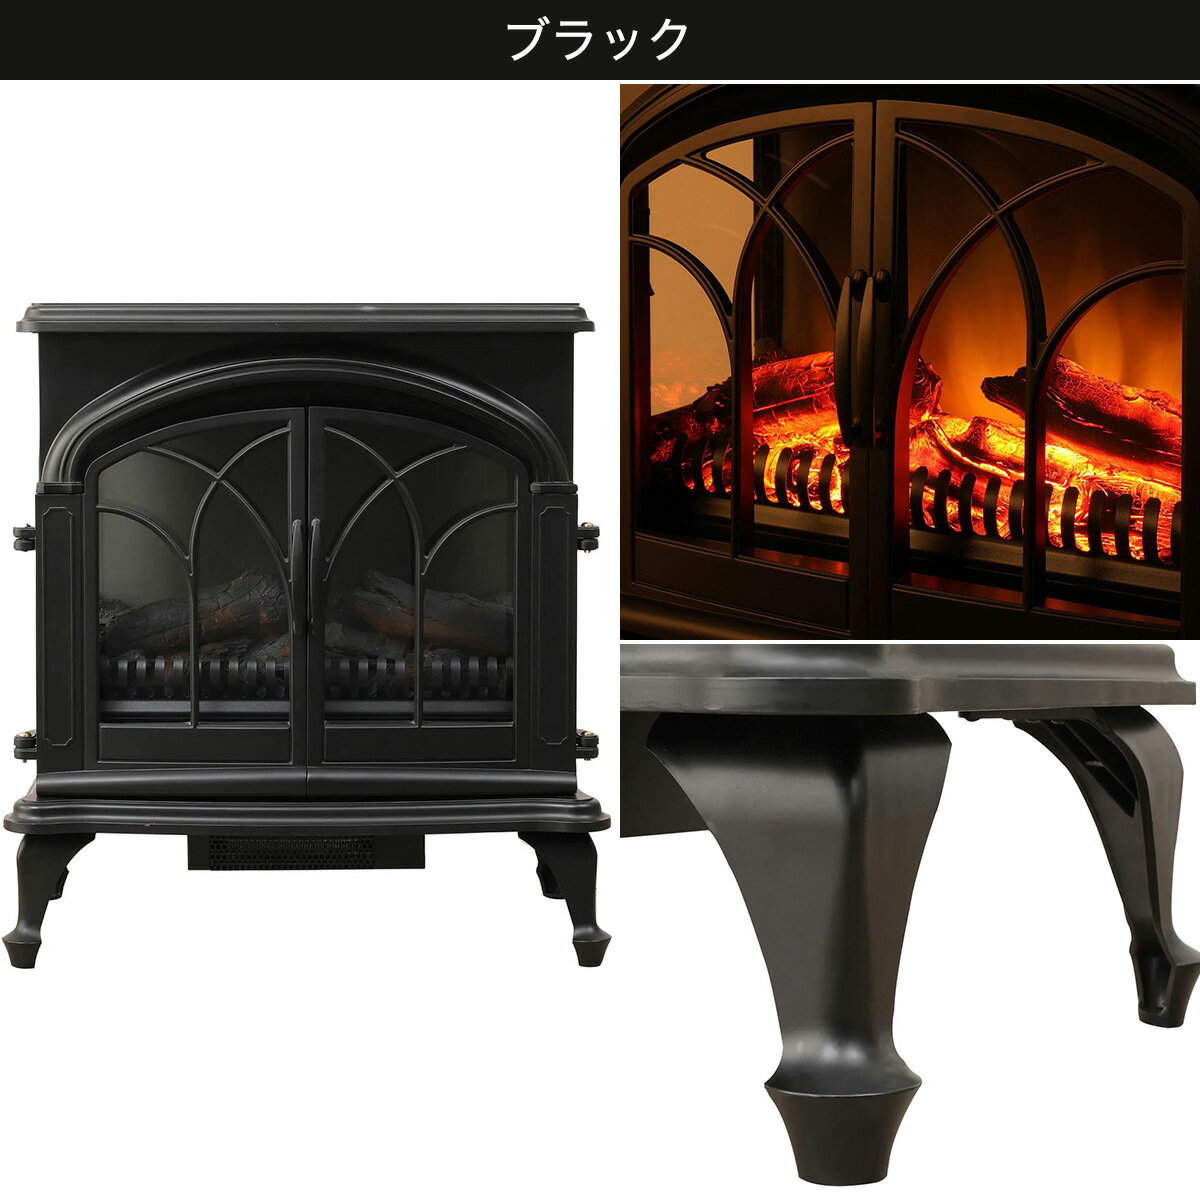 ニトリ『ワイド暖炉型ファンヒーター』